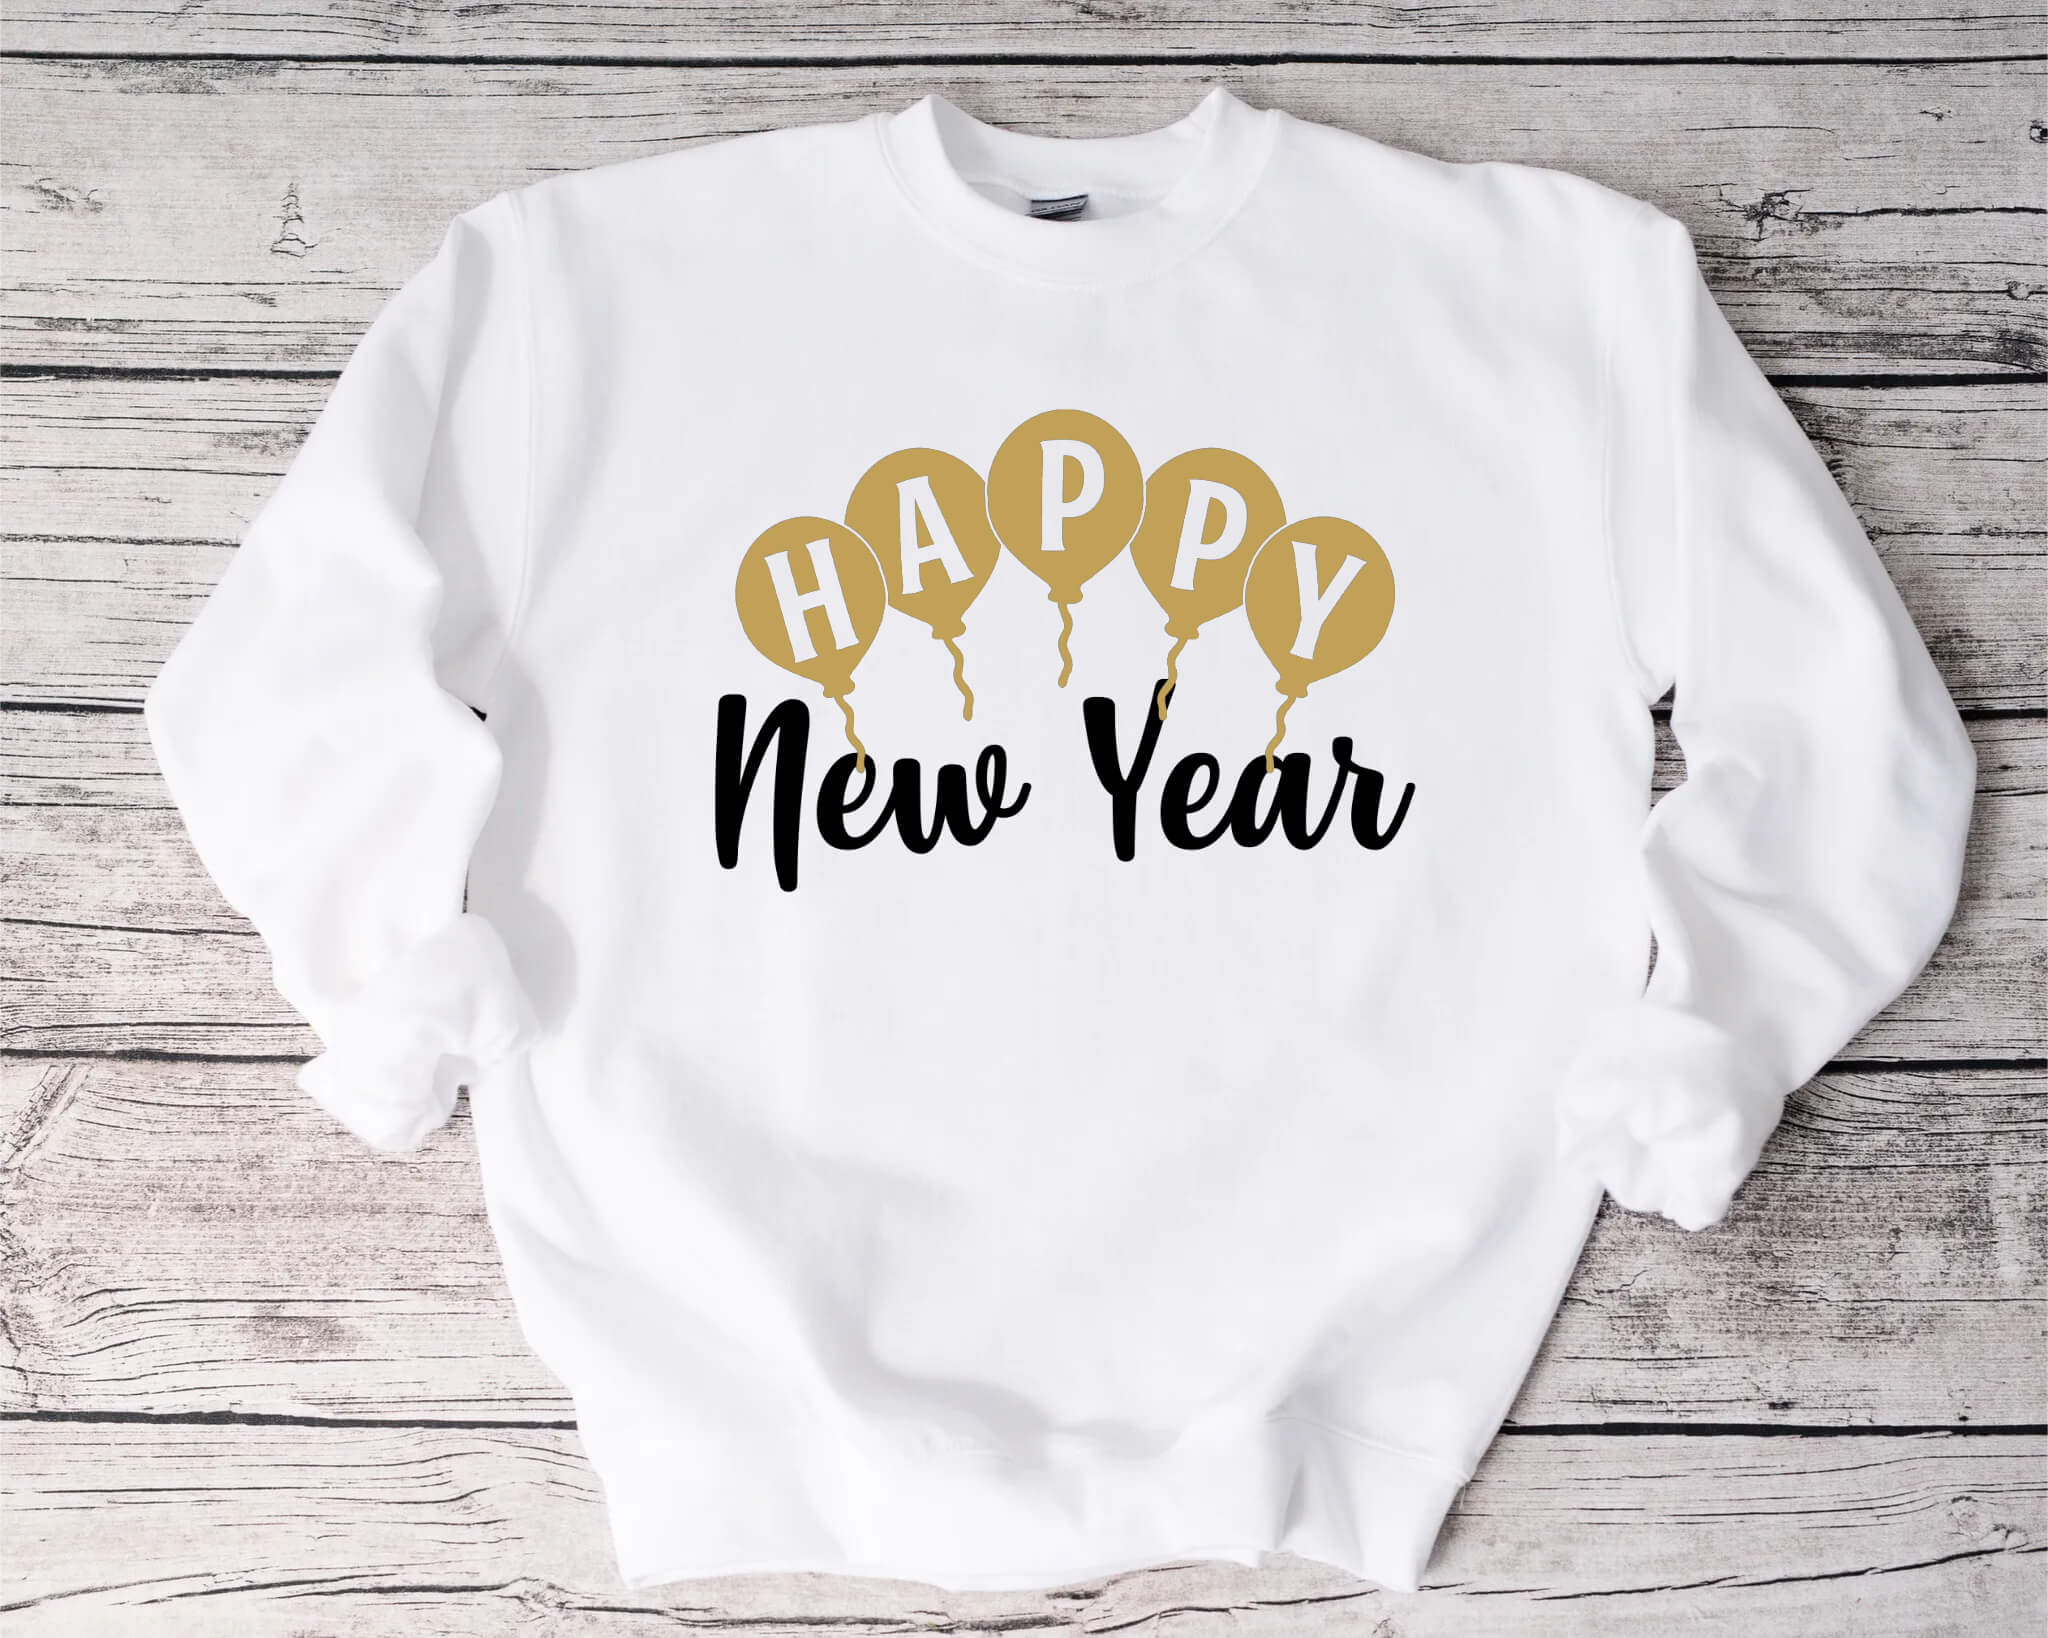 New Year's Happy New Year Men's Women's Unisex Graphic Print T-Shirt